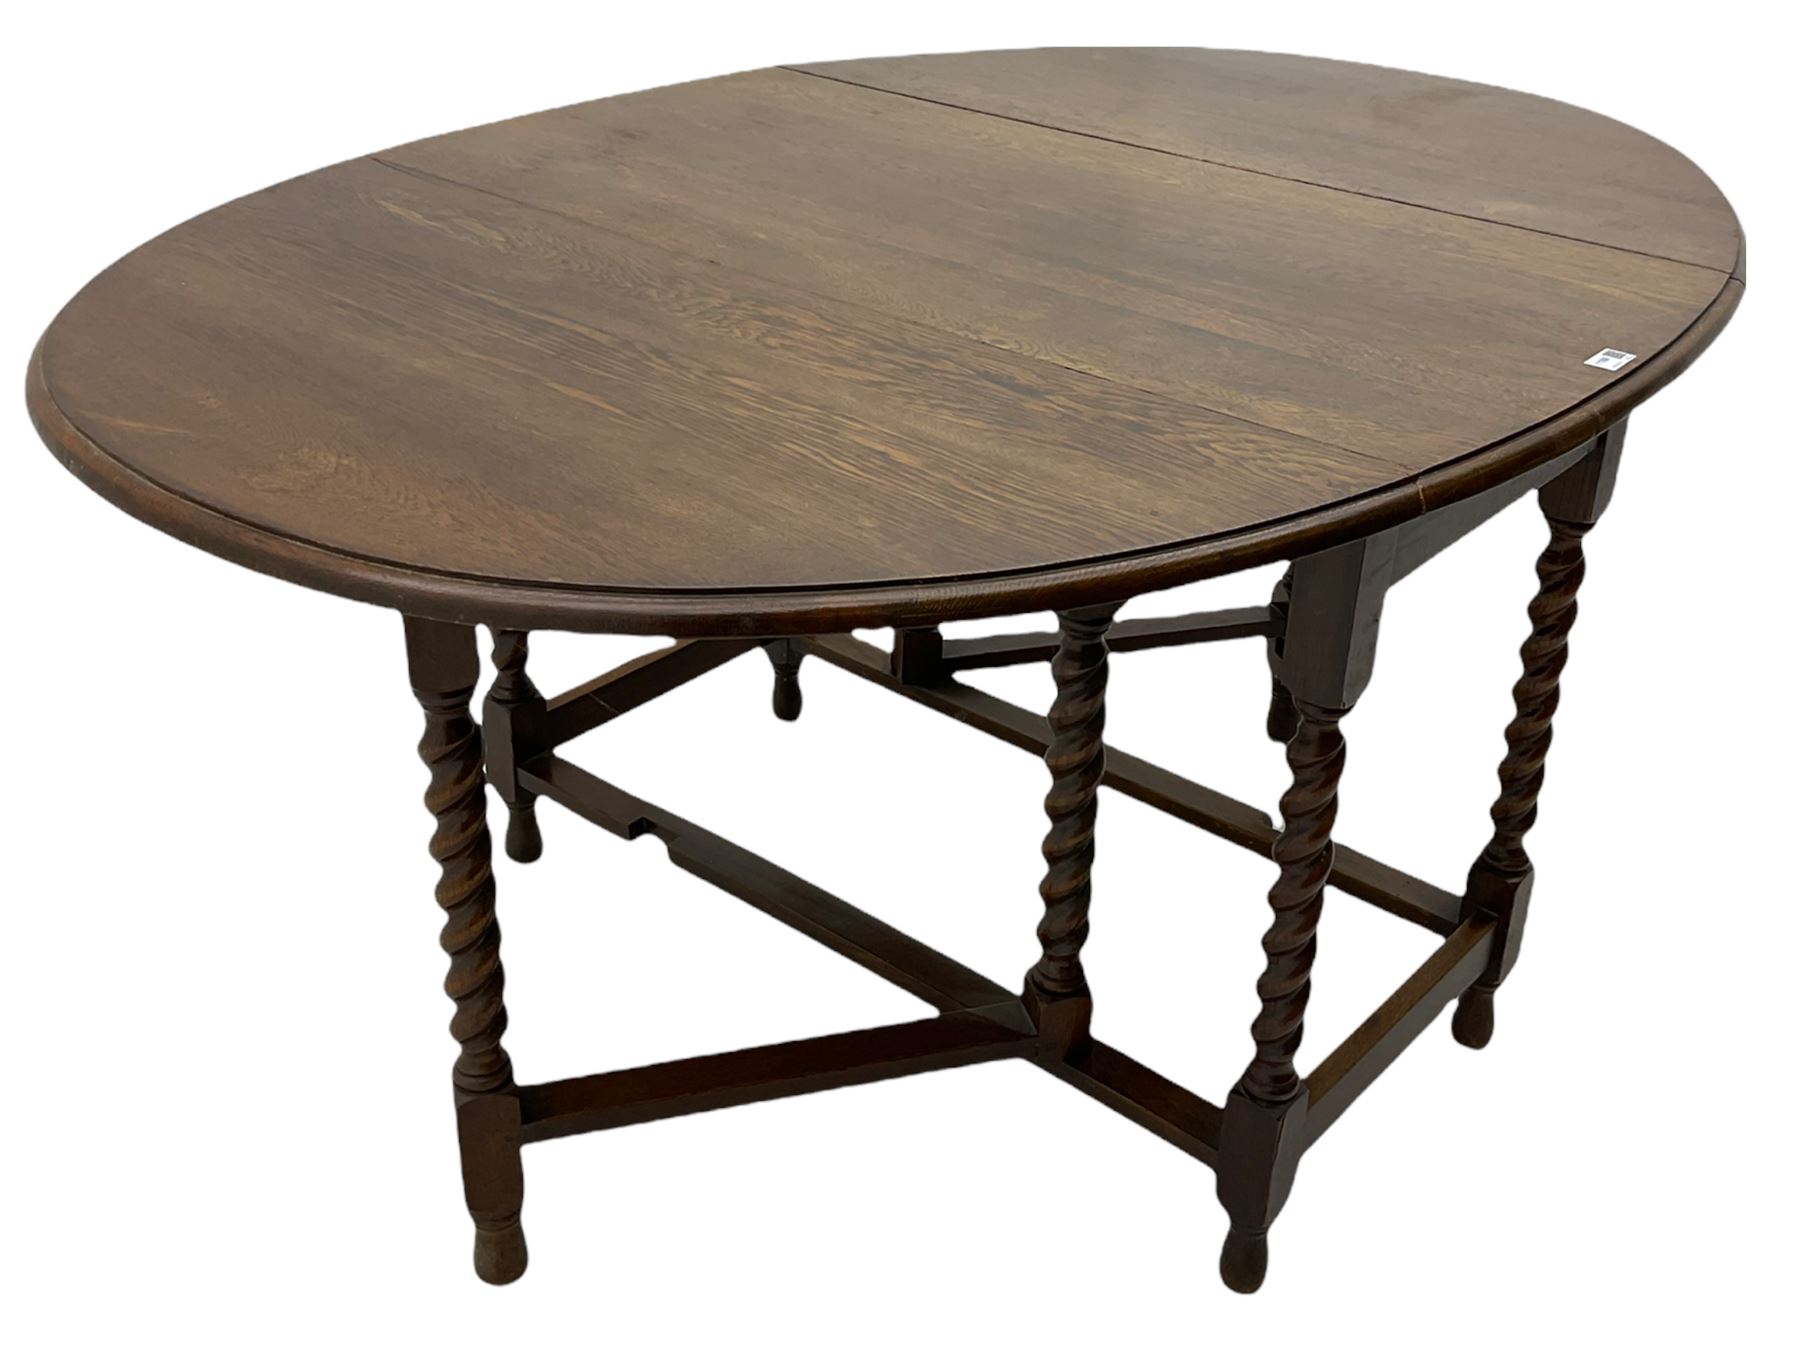 Early 20th century oak barley twist drop leaf dining table (105cm x 154cm - Image 9 of 24